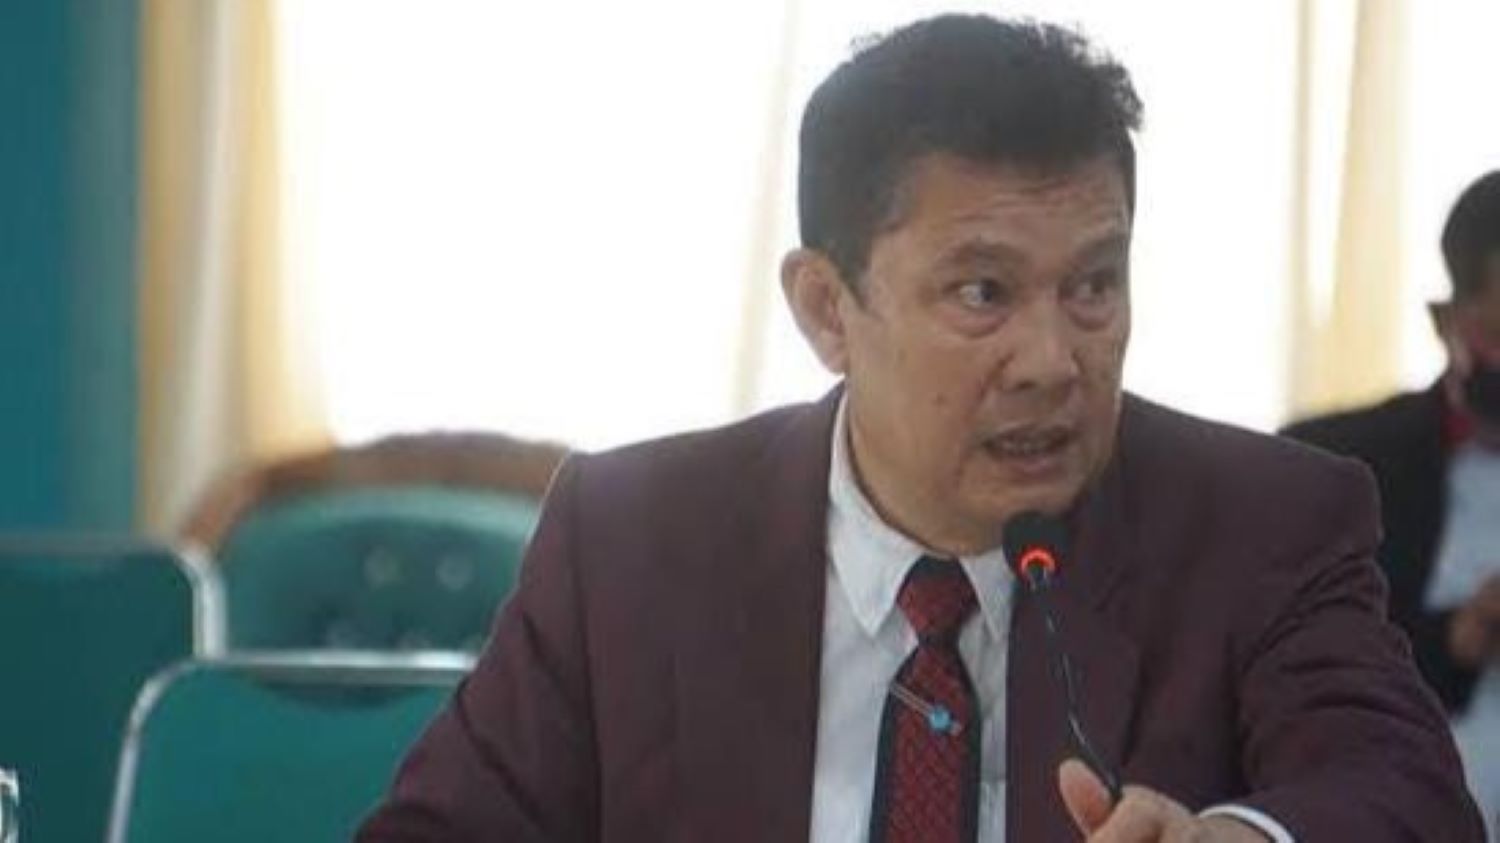 Guru Besar Universitas Lampung yang Terkait Kasus Korupsi, Meninggal Dunia di Lapas